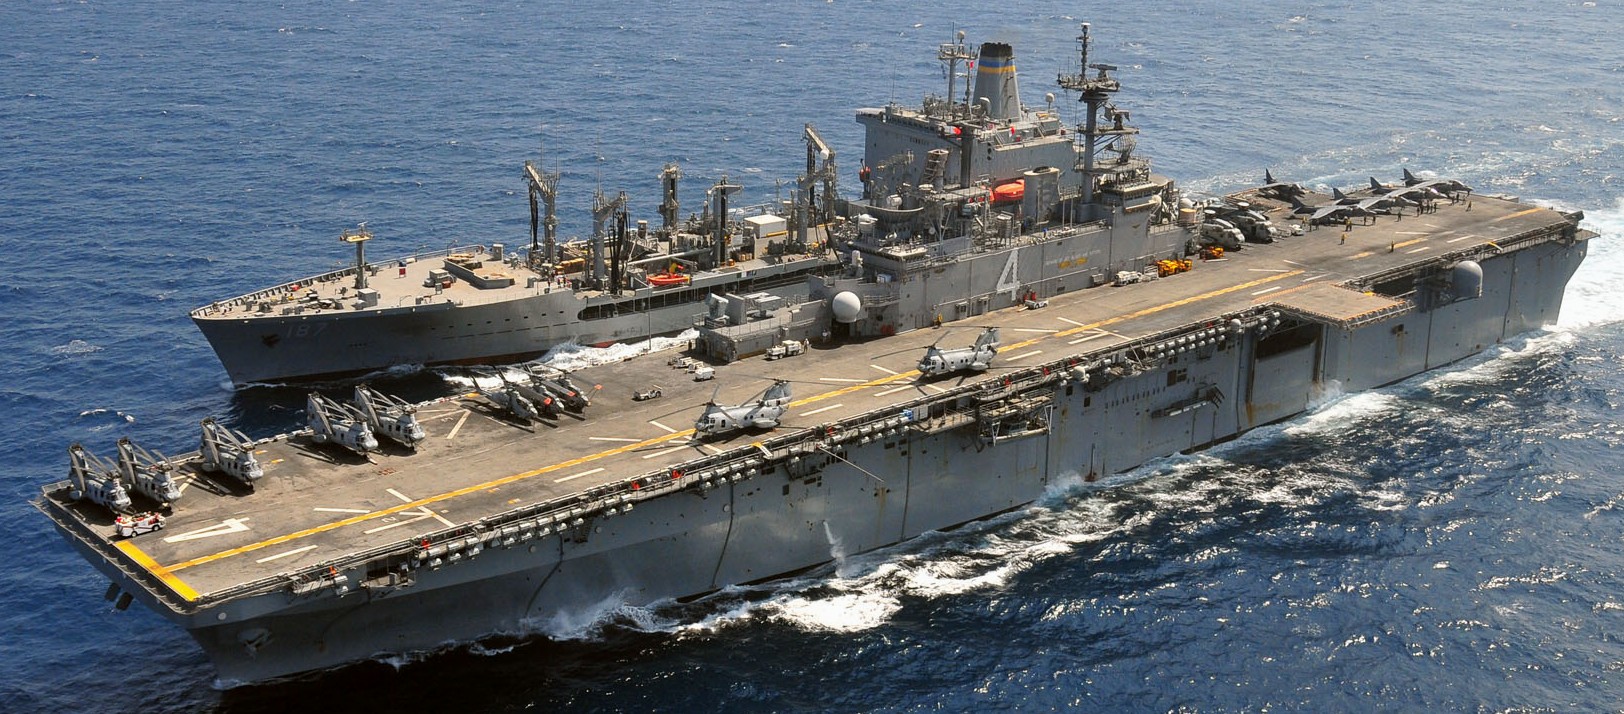 lhd-4 uss boxer wasp class amphibious assault ship dock landing us navy marines hmm-163 arabian sea 58